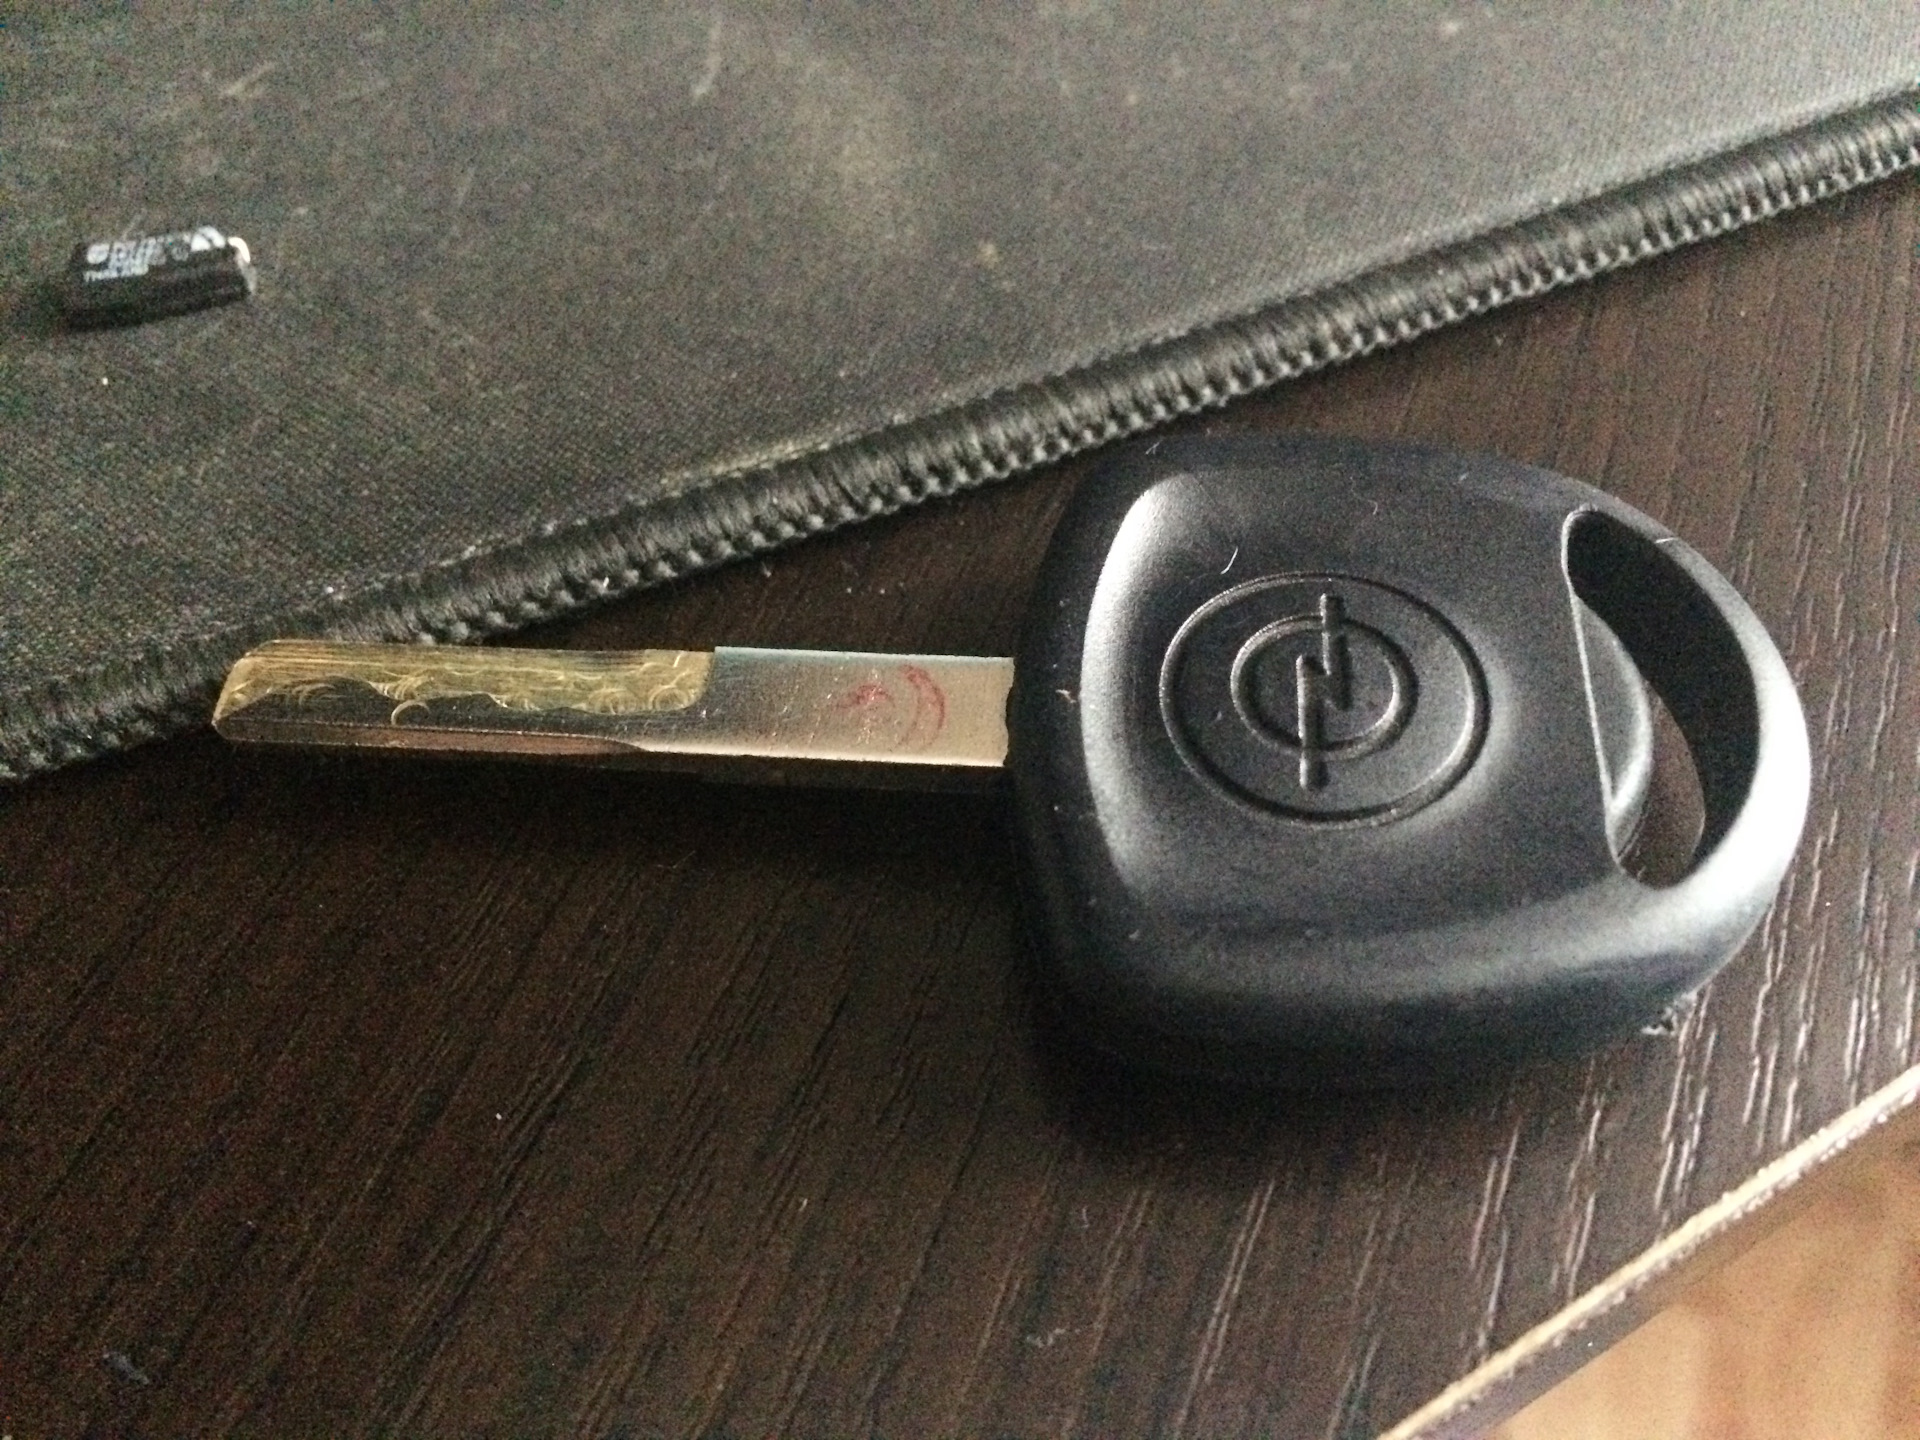 Ключ вектра б. Ключ зажигания Опель Вектра с. Opel Vectra b выкидной ключ. Ключ Опель Вектра с. Ключ Опель Вектра б.